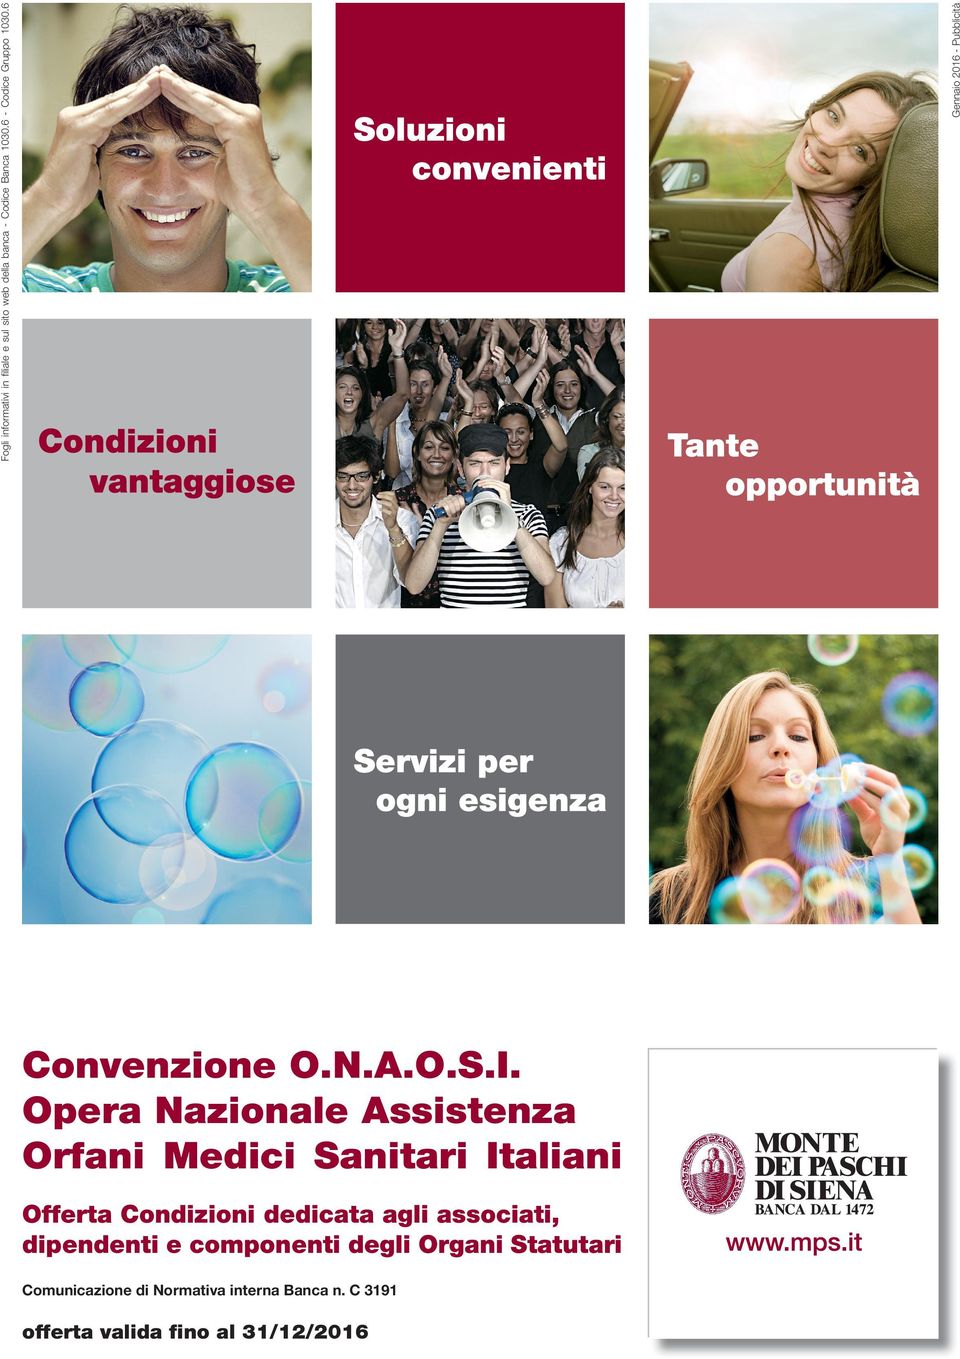 Opera Nazionale Assistenza Orfani Medici Sanitari Italiani Offerta Condizioni dedicata agli